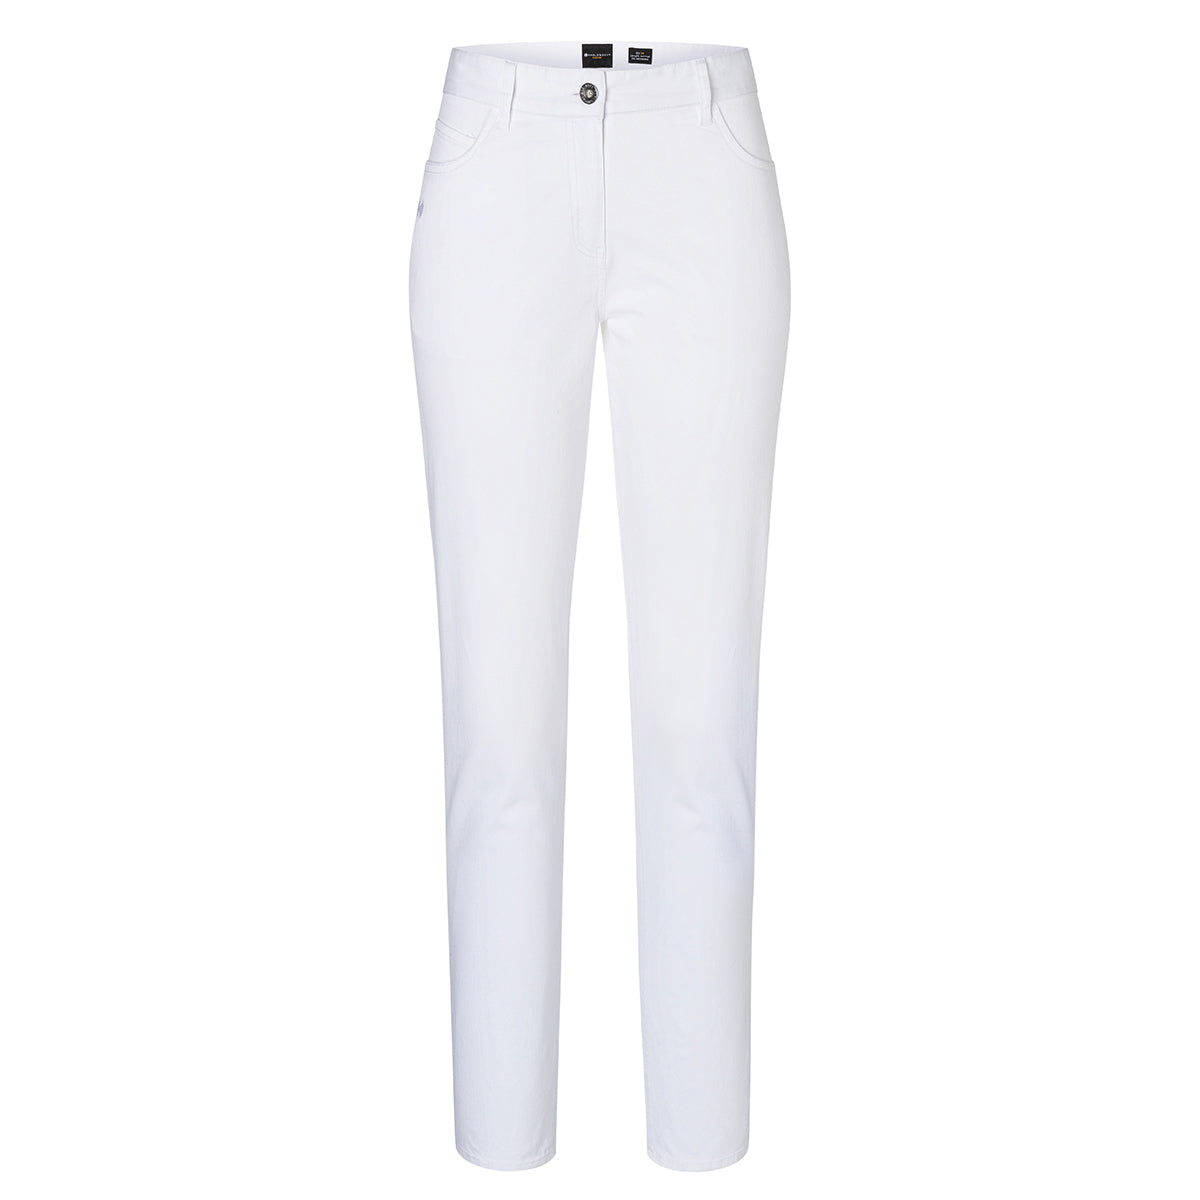 Karlowsky - 5-lomme bukser til damer - Hvid - Størrelse: 50